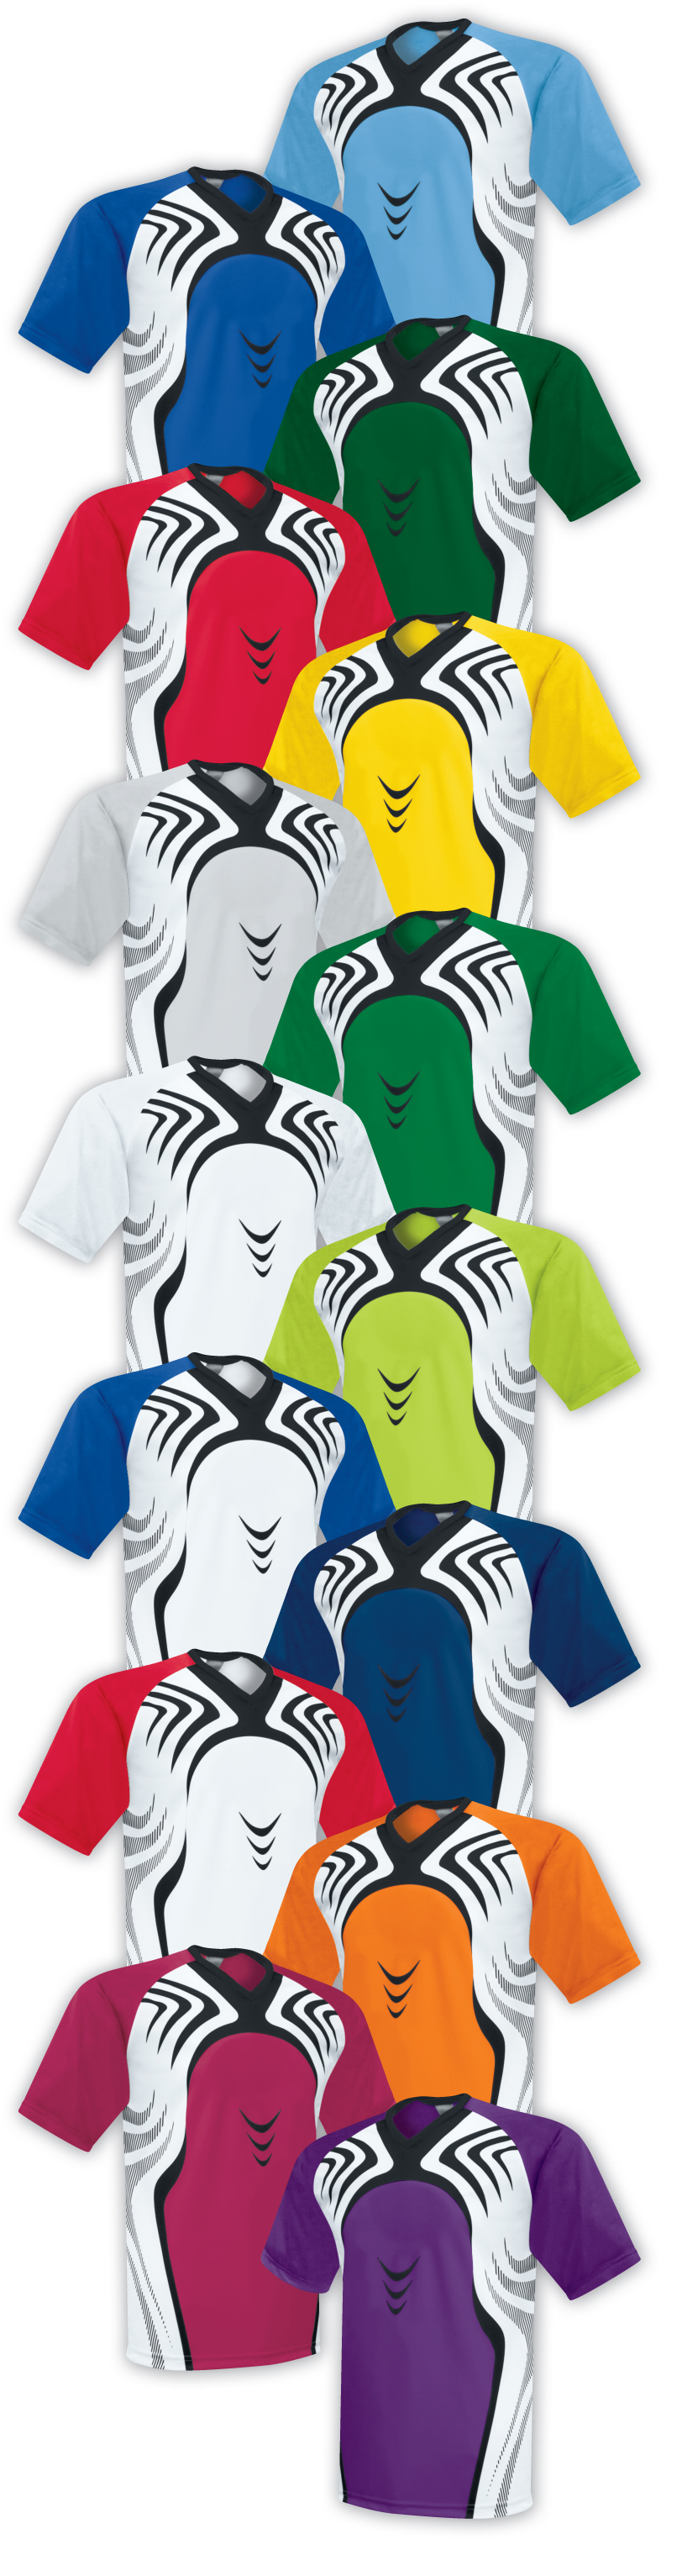 High 5 Sportswear Flash Soccer Uniform